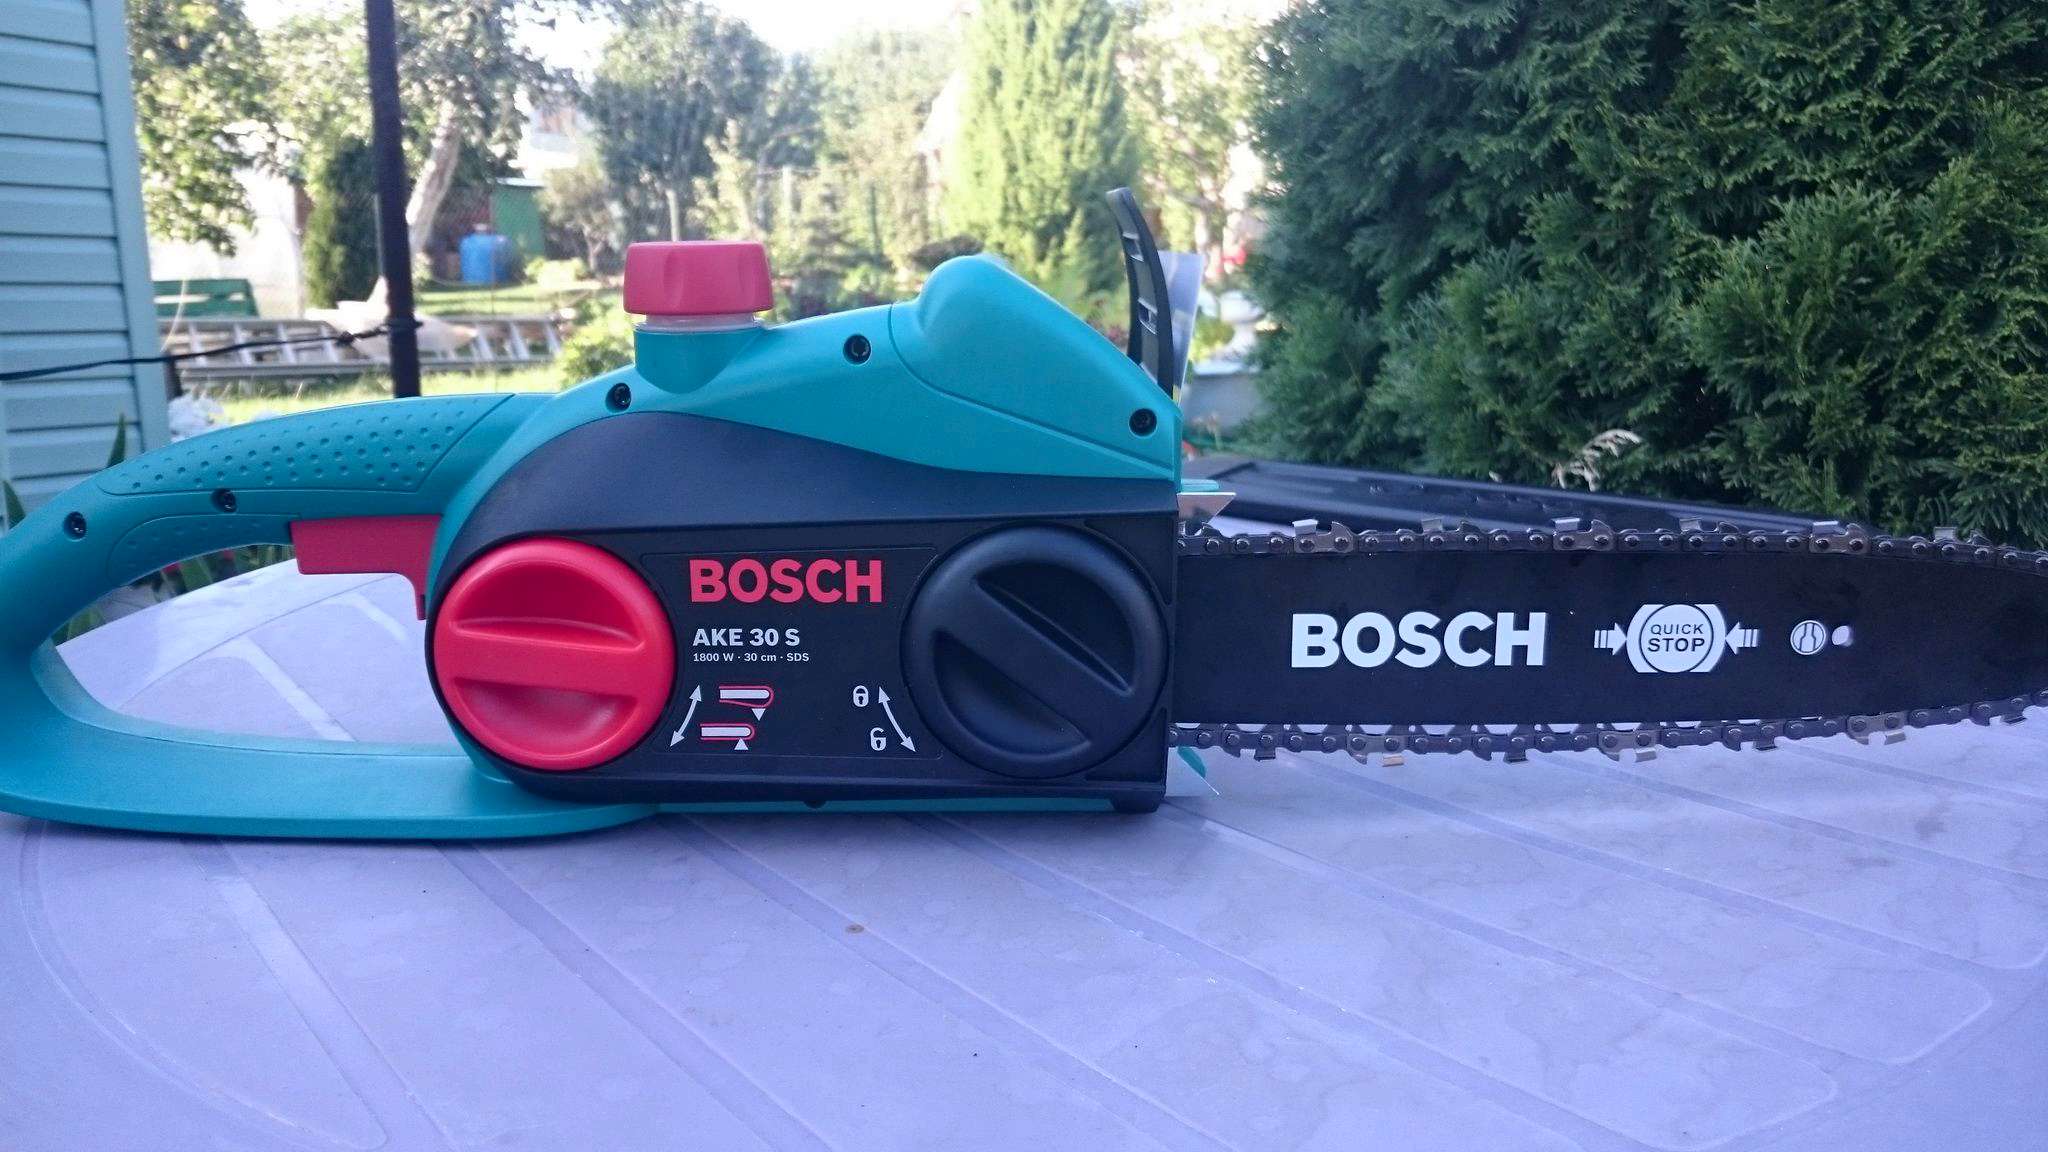 Цепная электропила bosch ake 30 видео - все, что нужно и полезно знать об инструментах